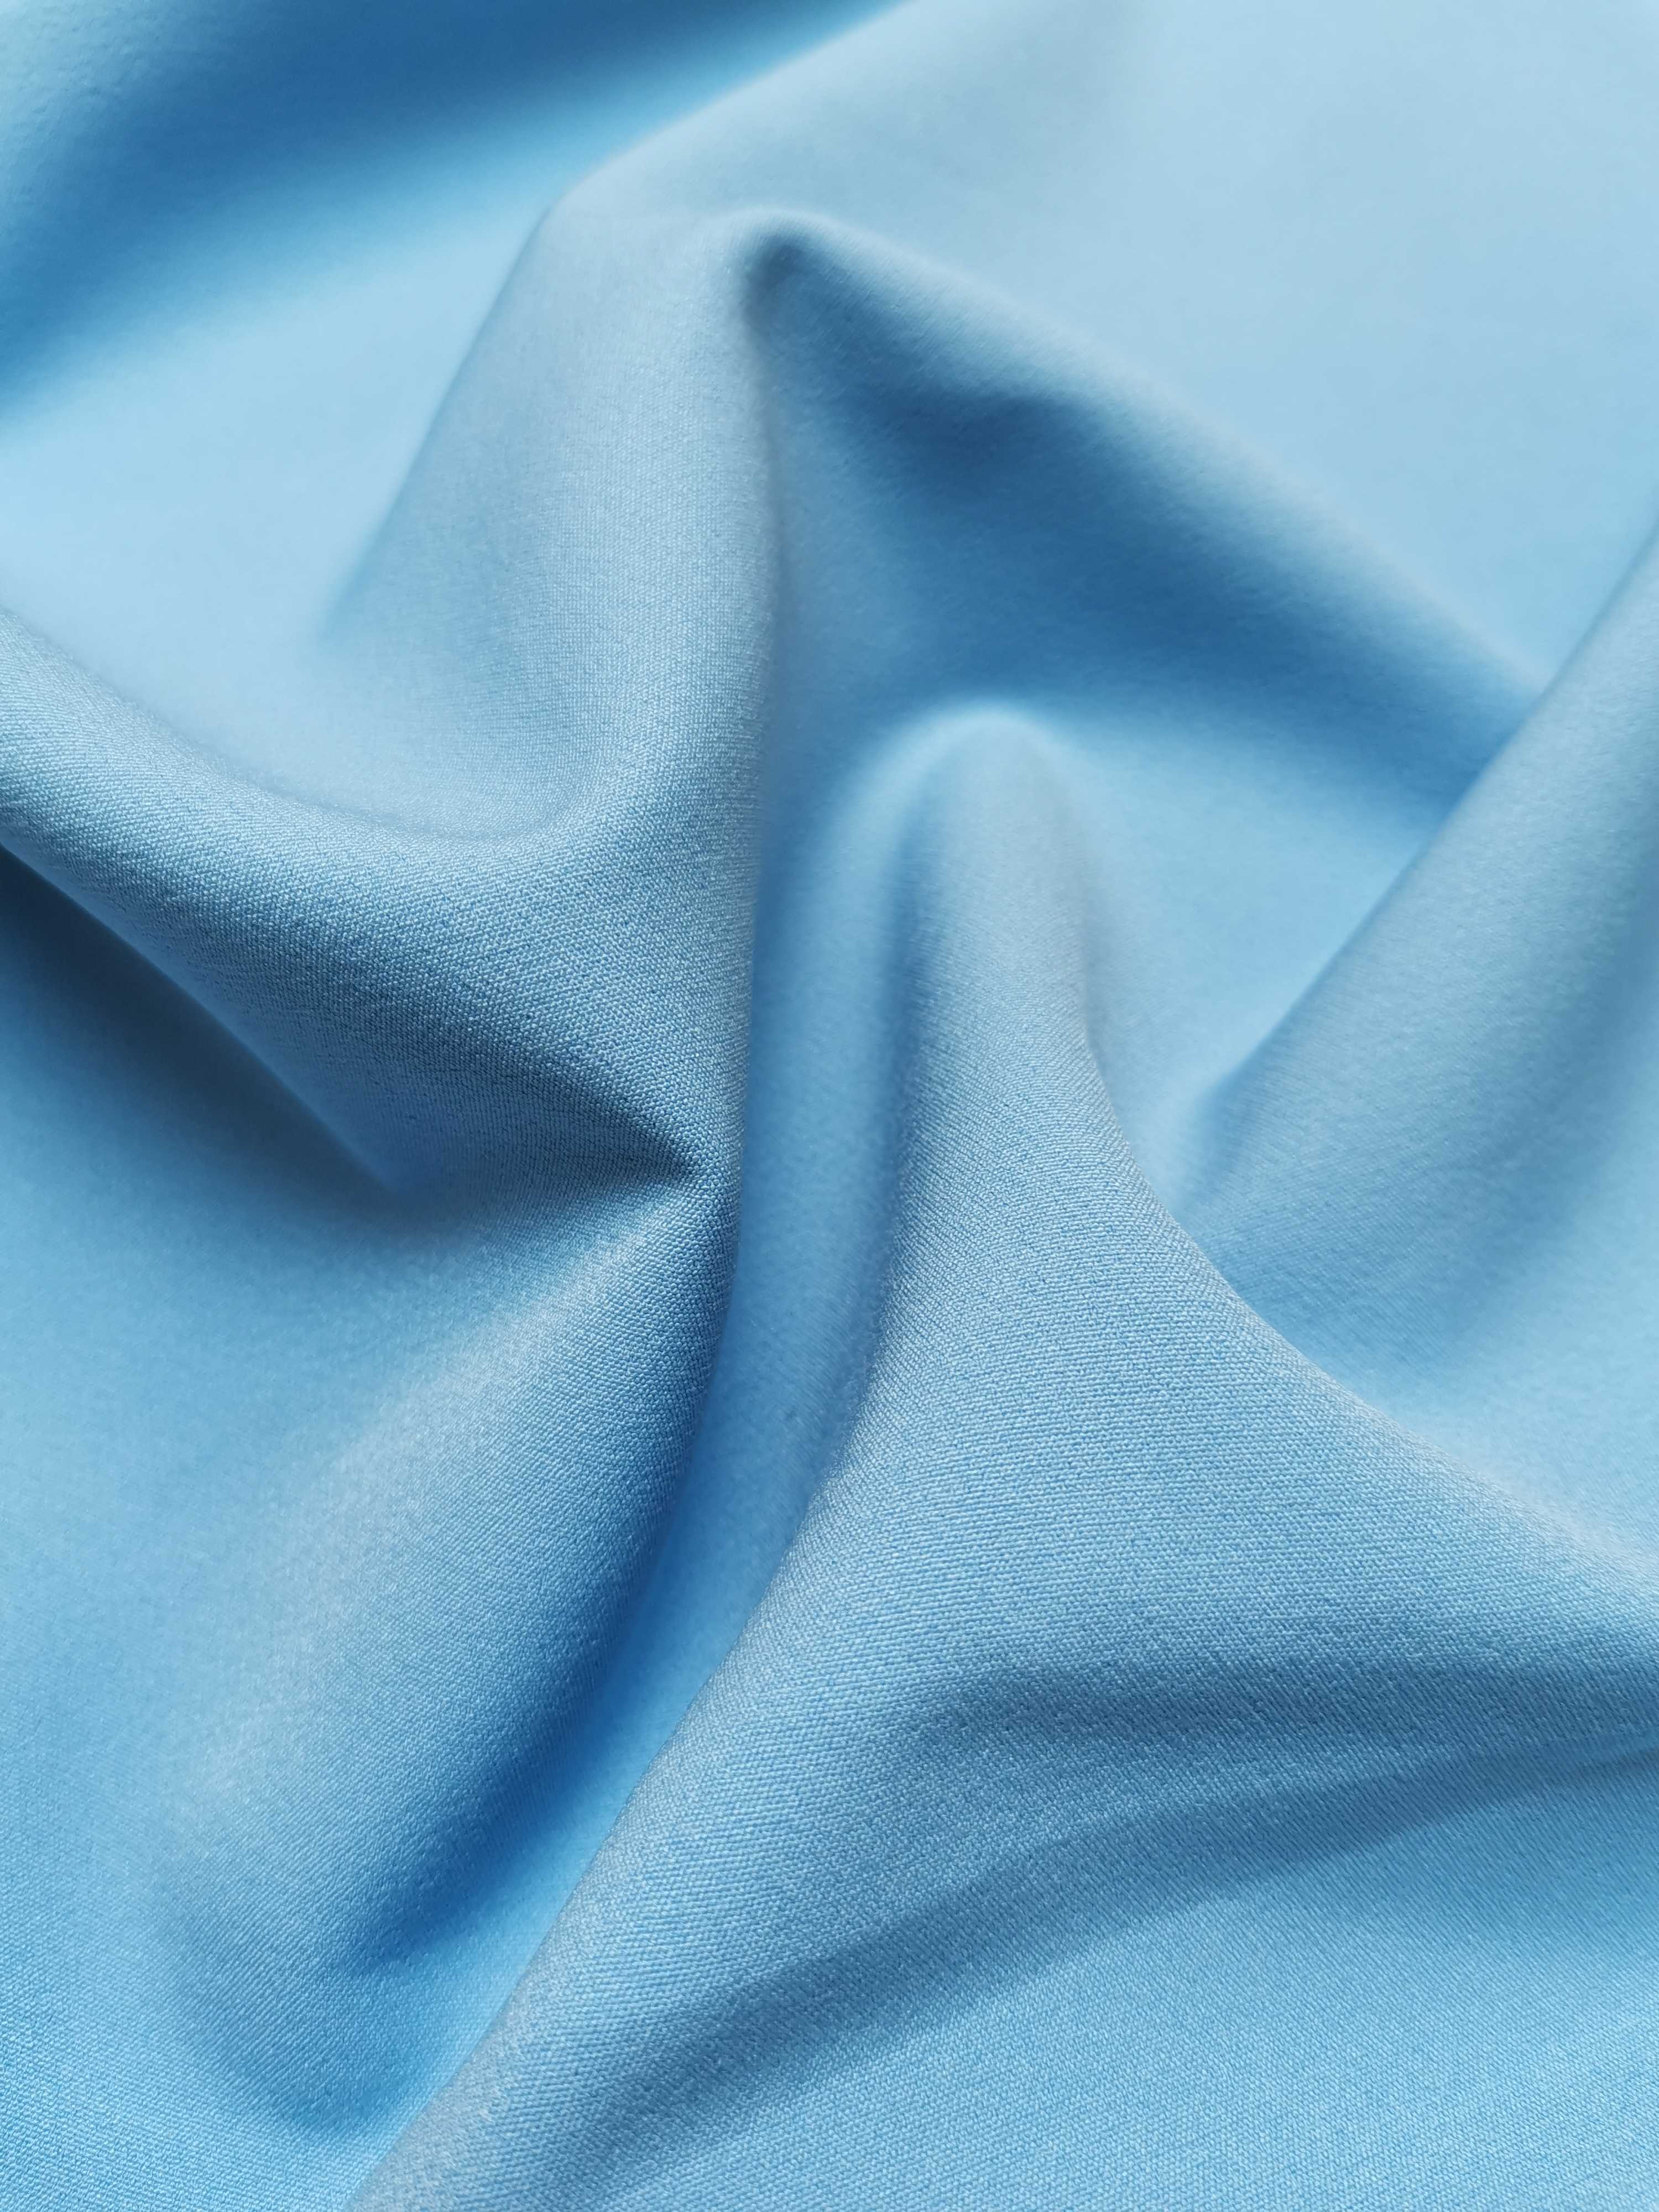 Описание характеристик ткани барби — из чего состоит и как выглядит